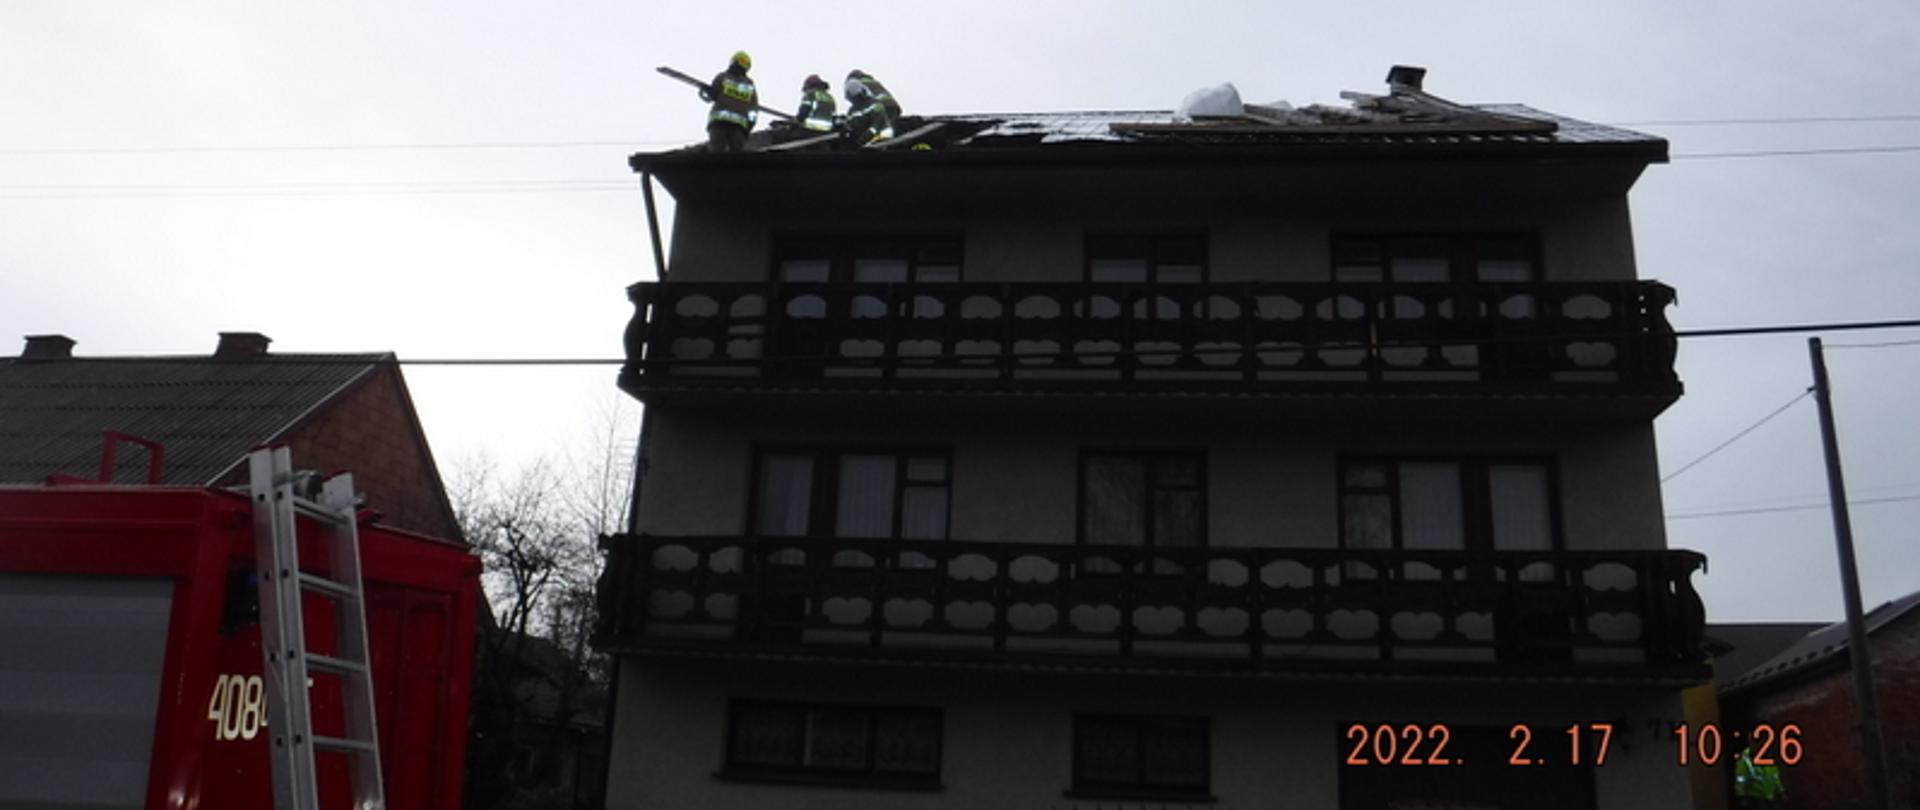 Zdjęcie przedstawia murowany dwupiętrowy budynek na którym doszło do częściowego zerwania dachu. Po lewej stronie widać cześć pojazdu pożarniczego. Na dachu budynku widać czterech strażaków którzy zabezpieczają zerwany dach. Po ich prawej stronie widać część uszkodzonego pokrycia dachowego.